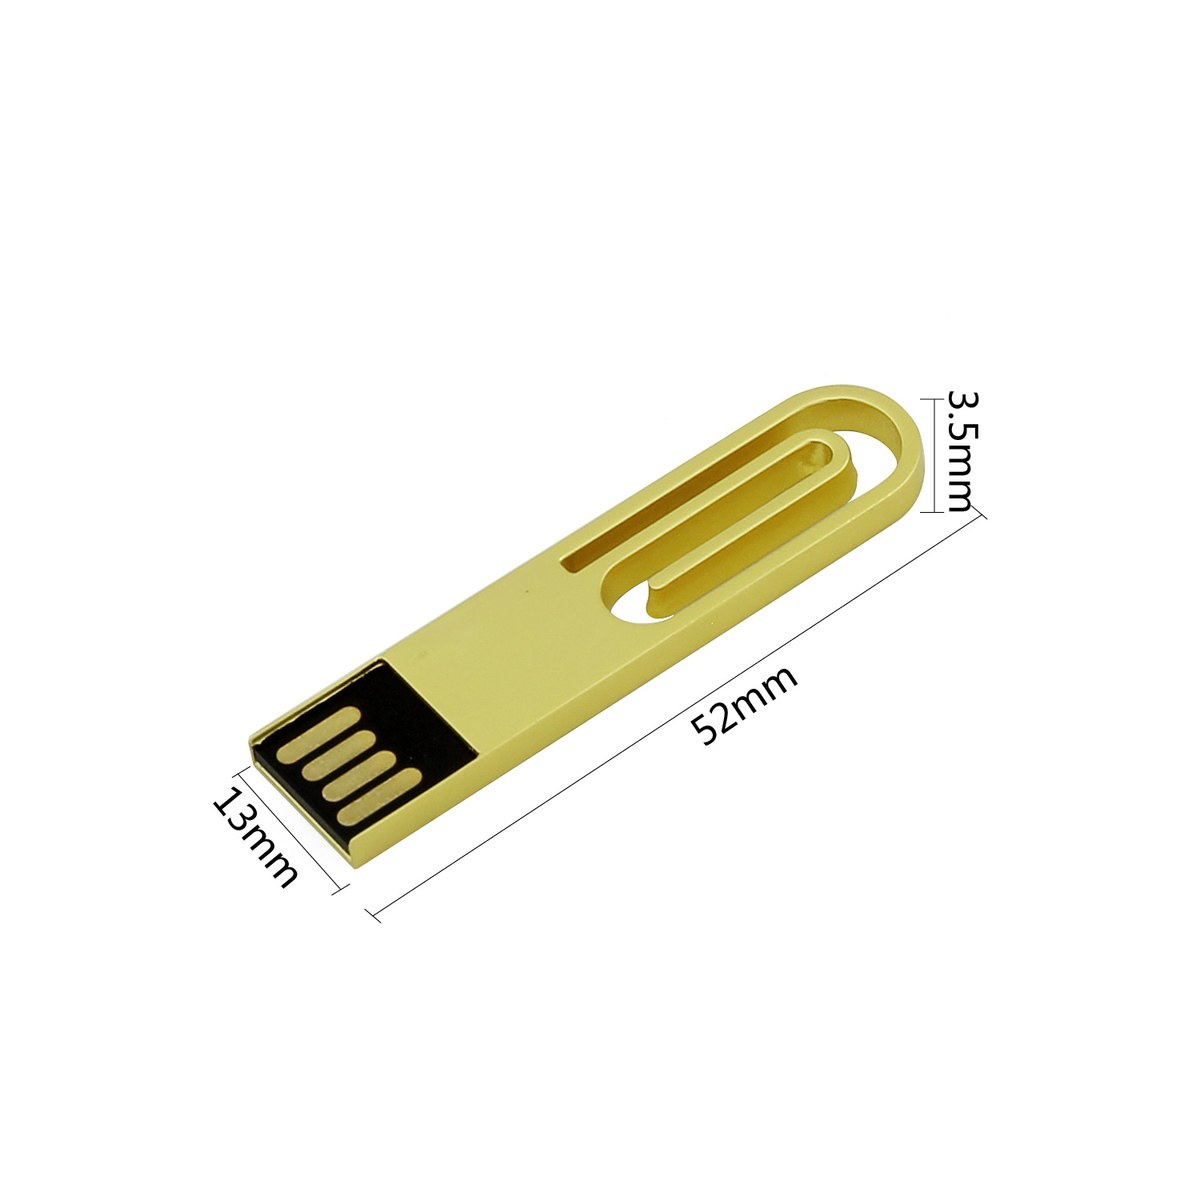 GERMANY eCLIP 16 USB-Stick (Blau, USB ® GB)